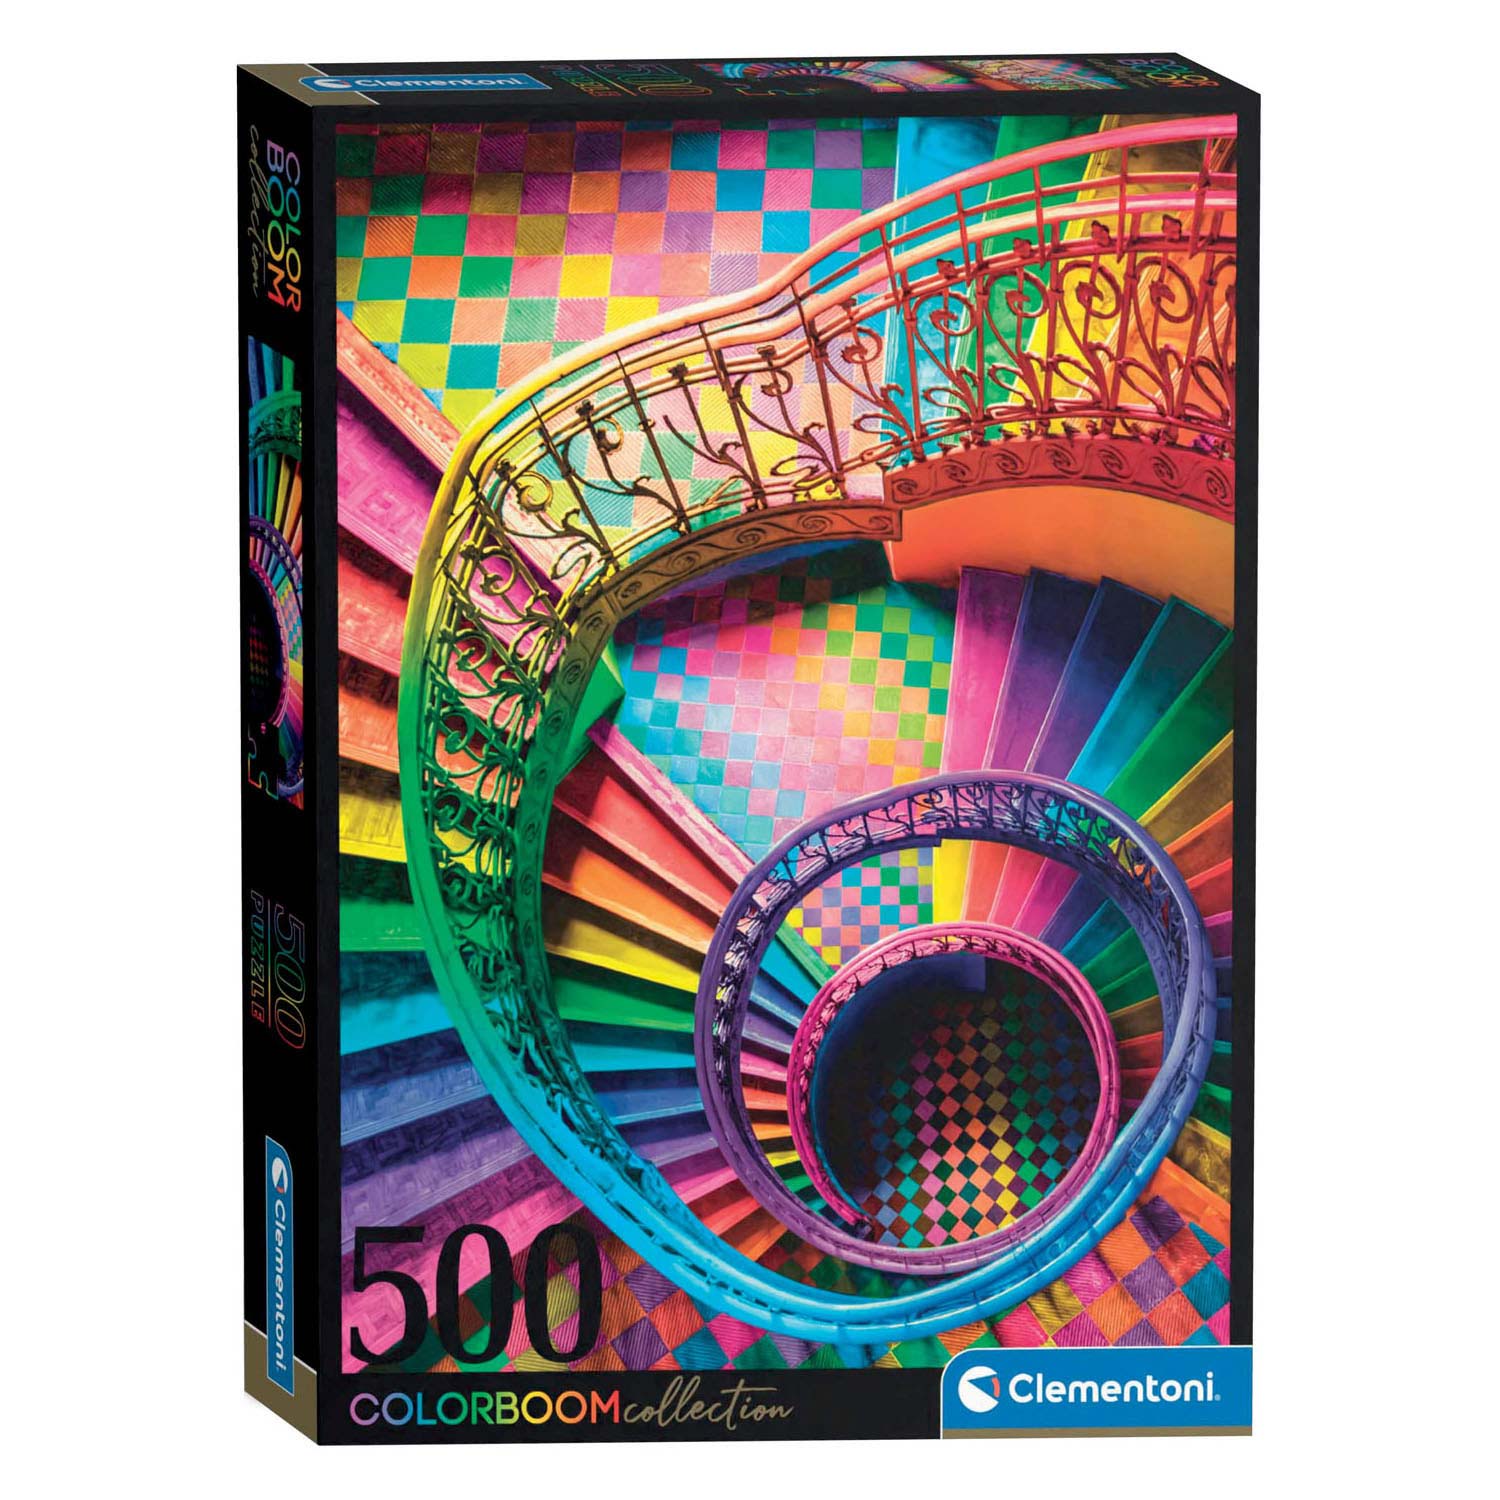 Clementoni Colorboom Puzzle Escaliers, 500 pcs.